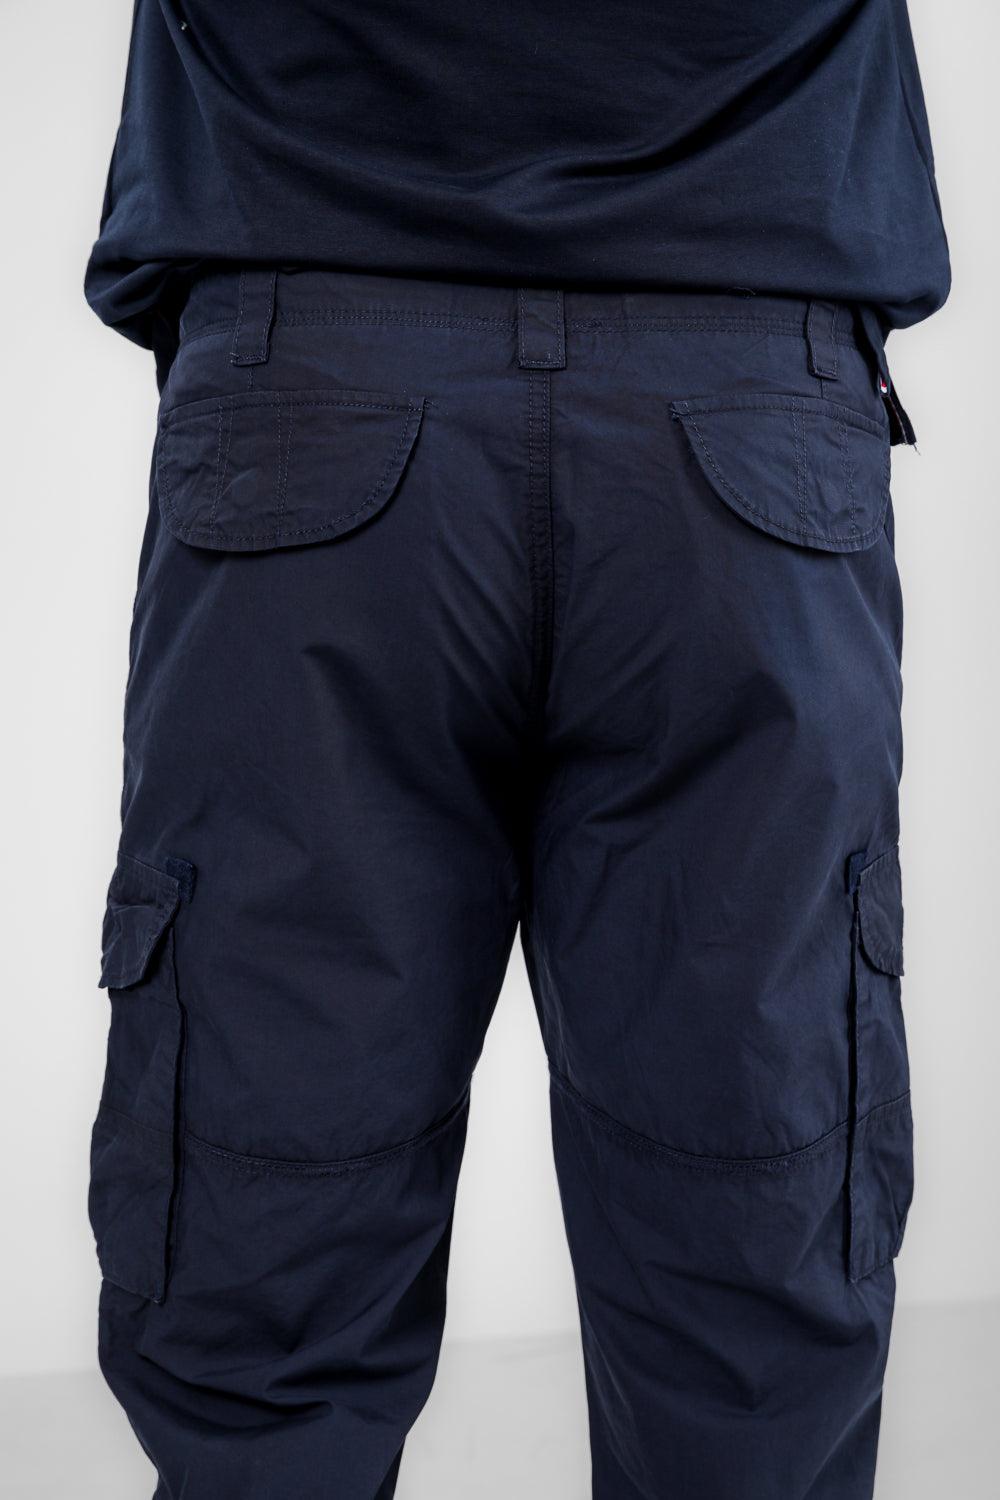 SCORCHER - מכנסי דגמ"ח בצבע נייבי - MASHBIR//365